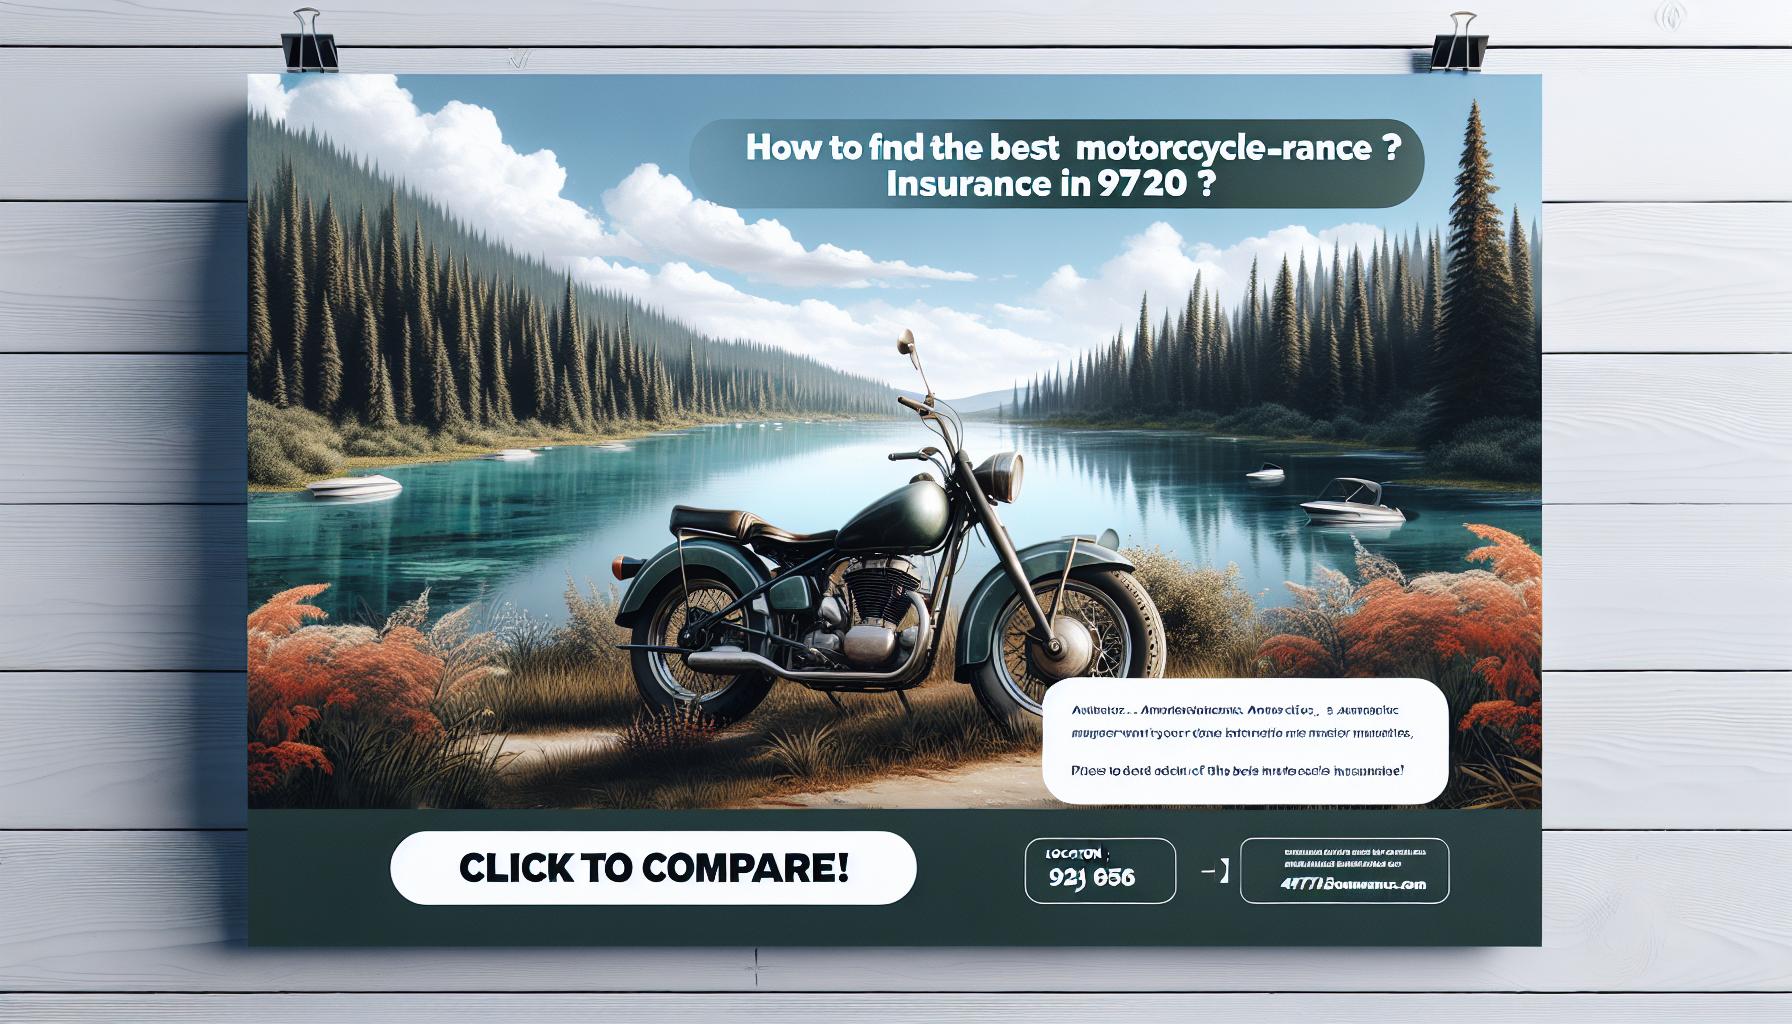 trouvez la meilleure assurance moto 97420 avec notre comparateur en ligne. découvrez comment comparer les offres et choisissez la protection qui vous convient à prix compétitif.